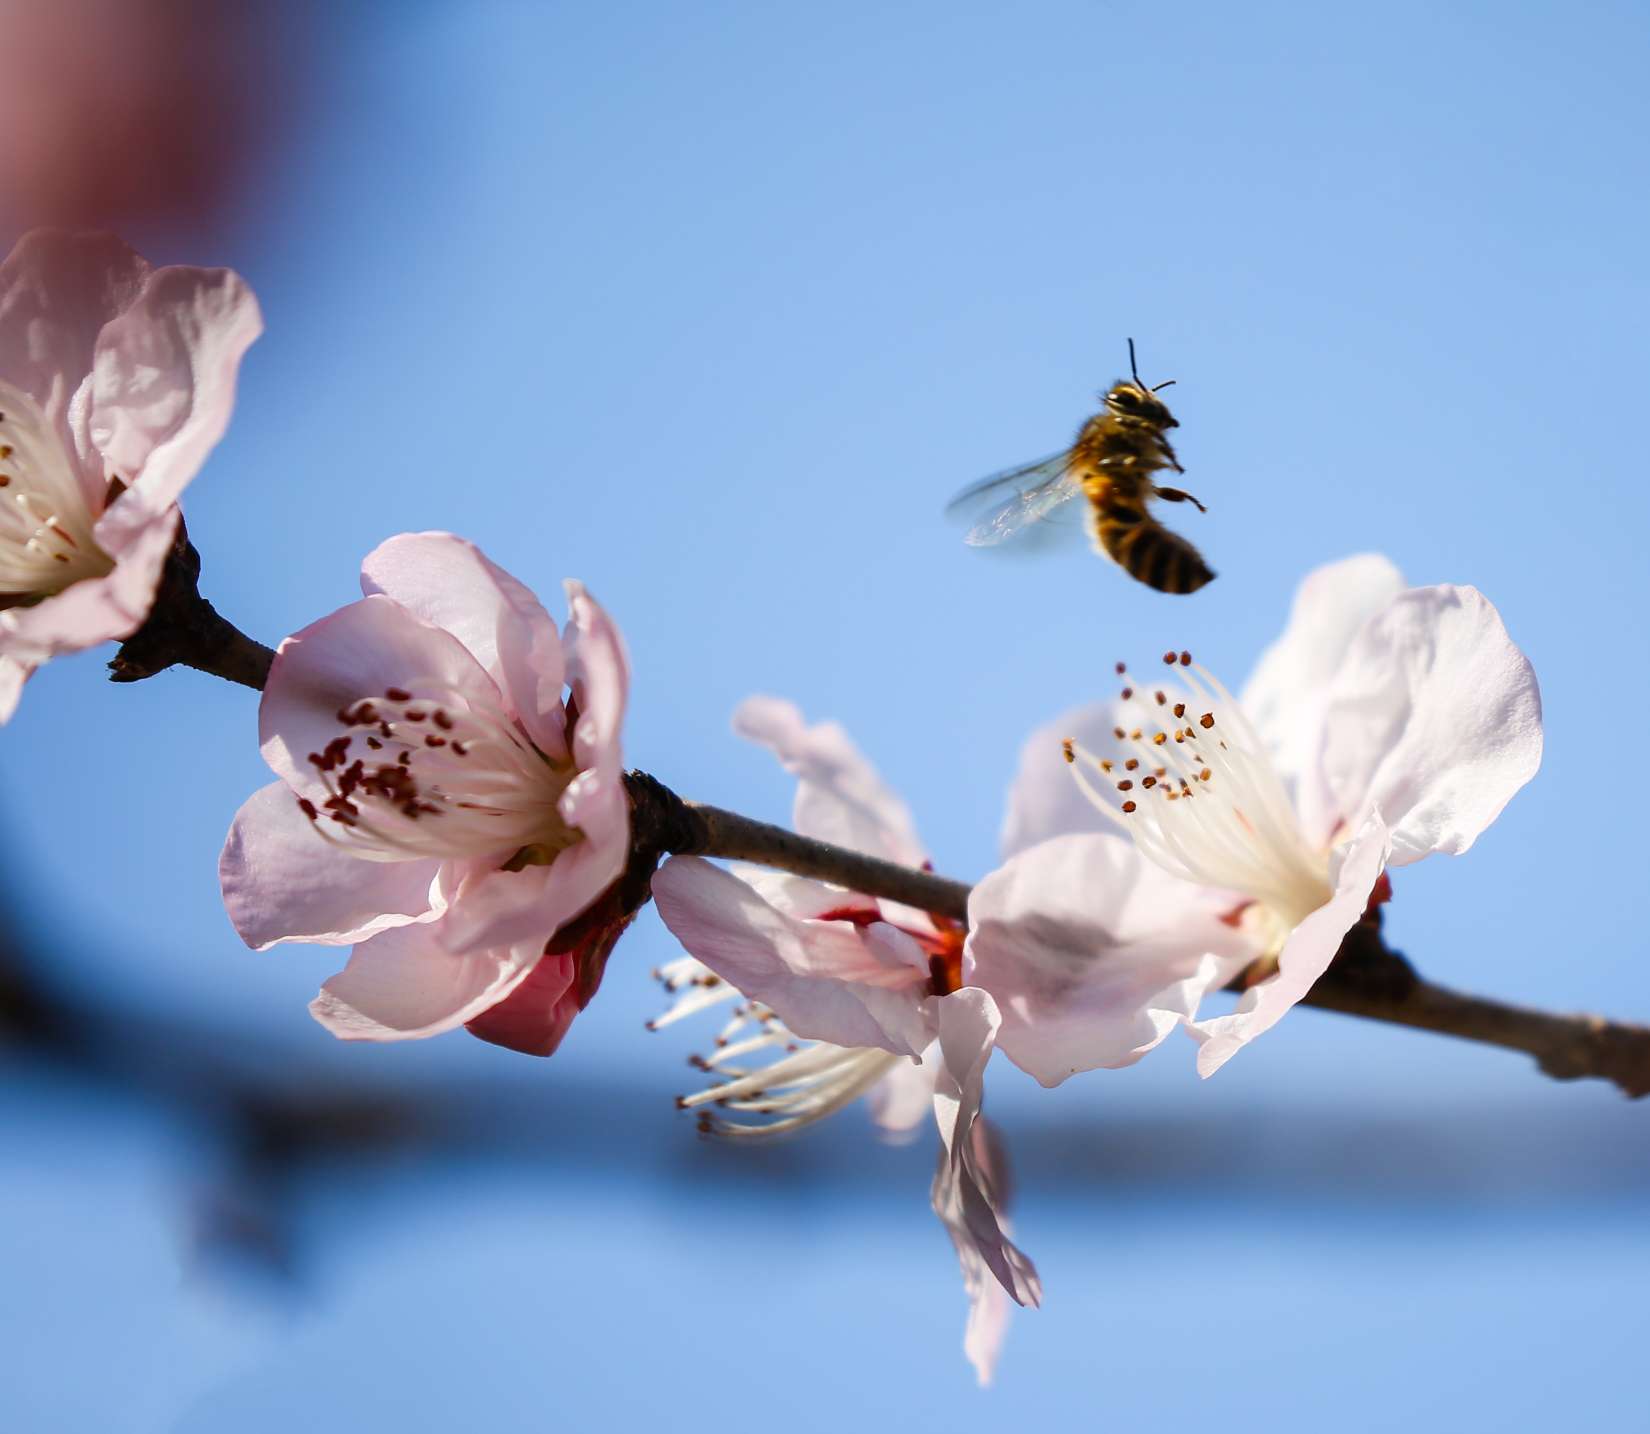 济南千佛山的山桃花开了,引得无数蜜蜂飞舞采蜜,酷似一幅幅蜂花恋春图